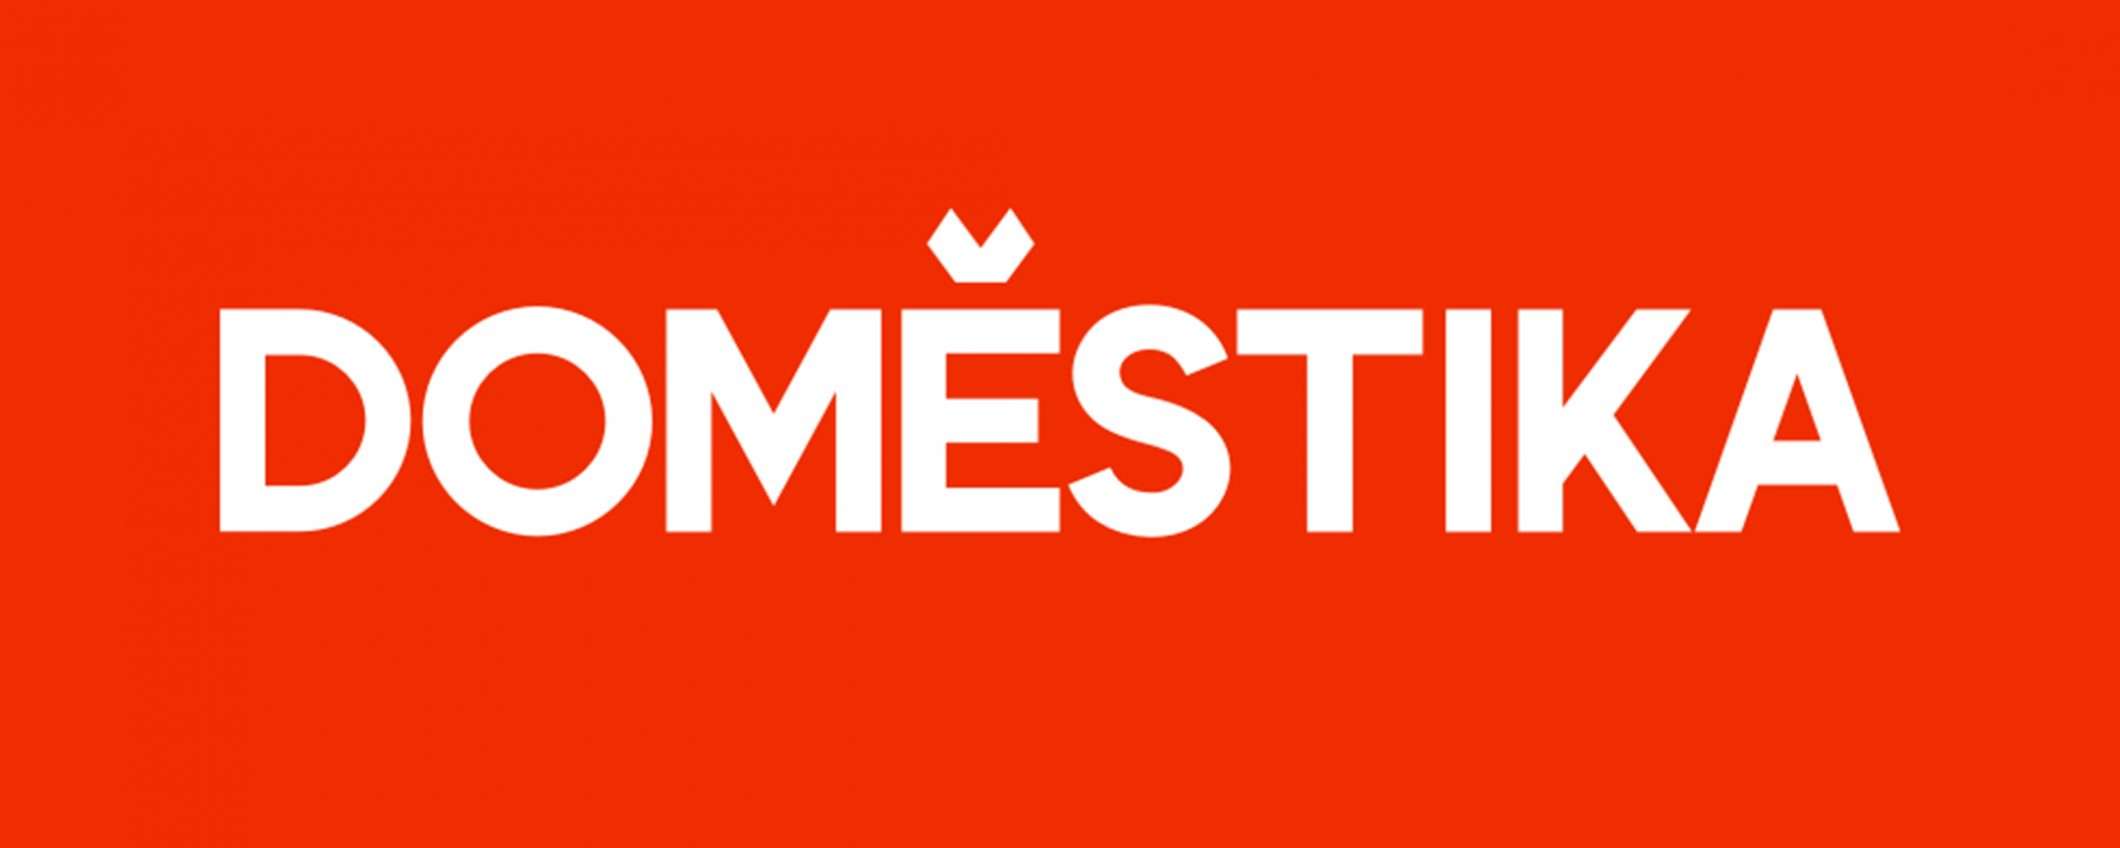 Torna la promo Domestika: 3 corsi a scelta a soli 25,90€